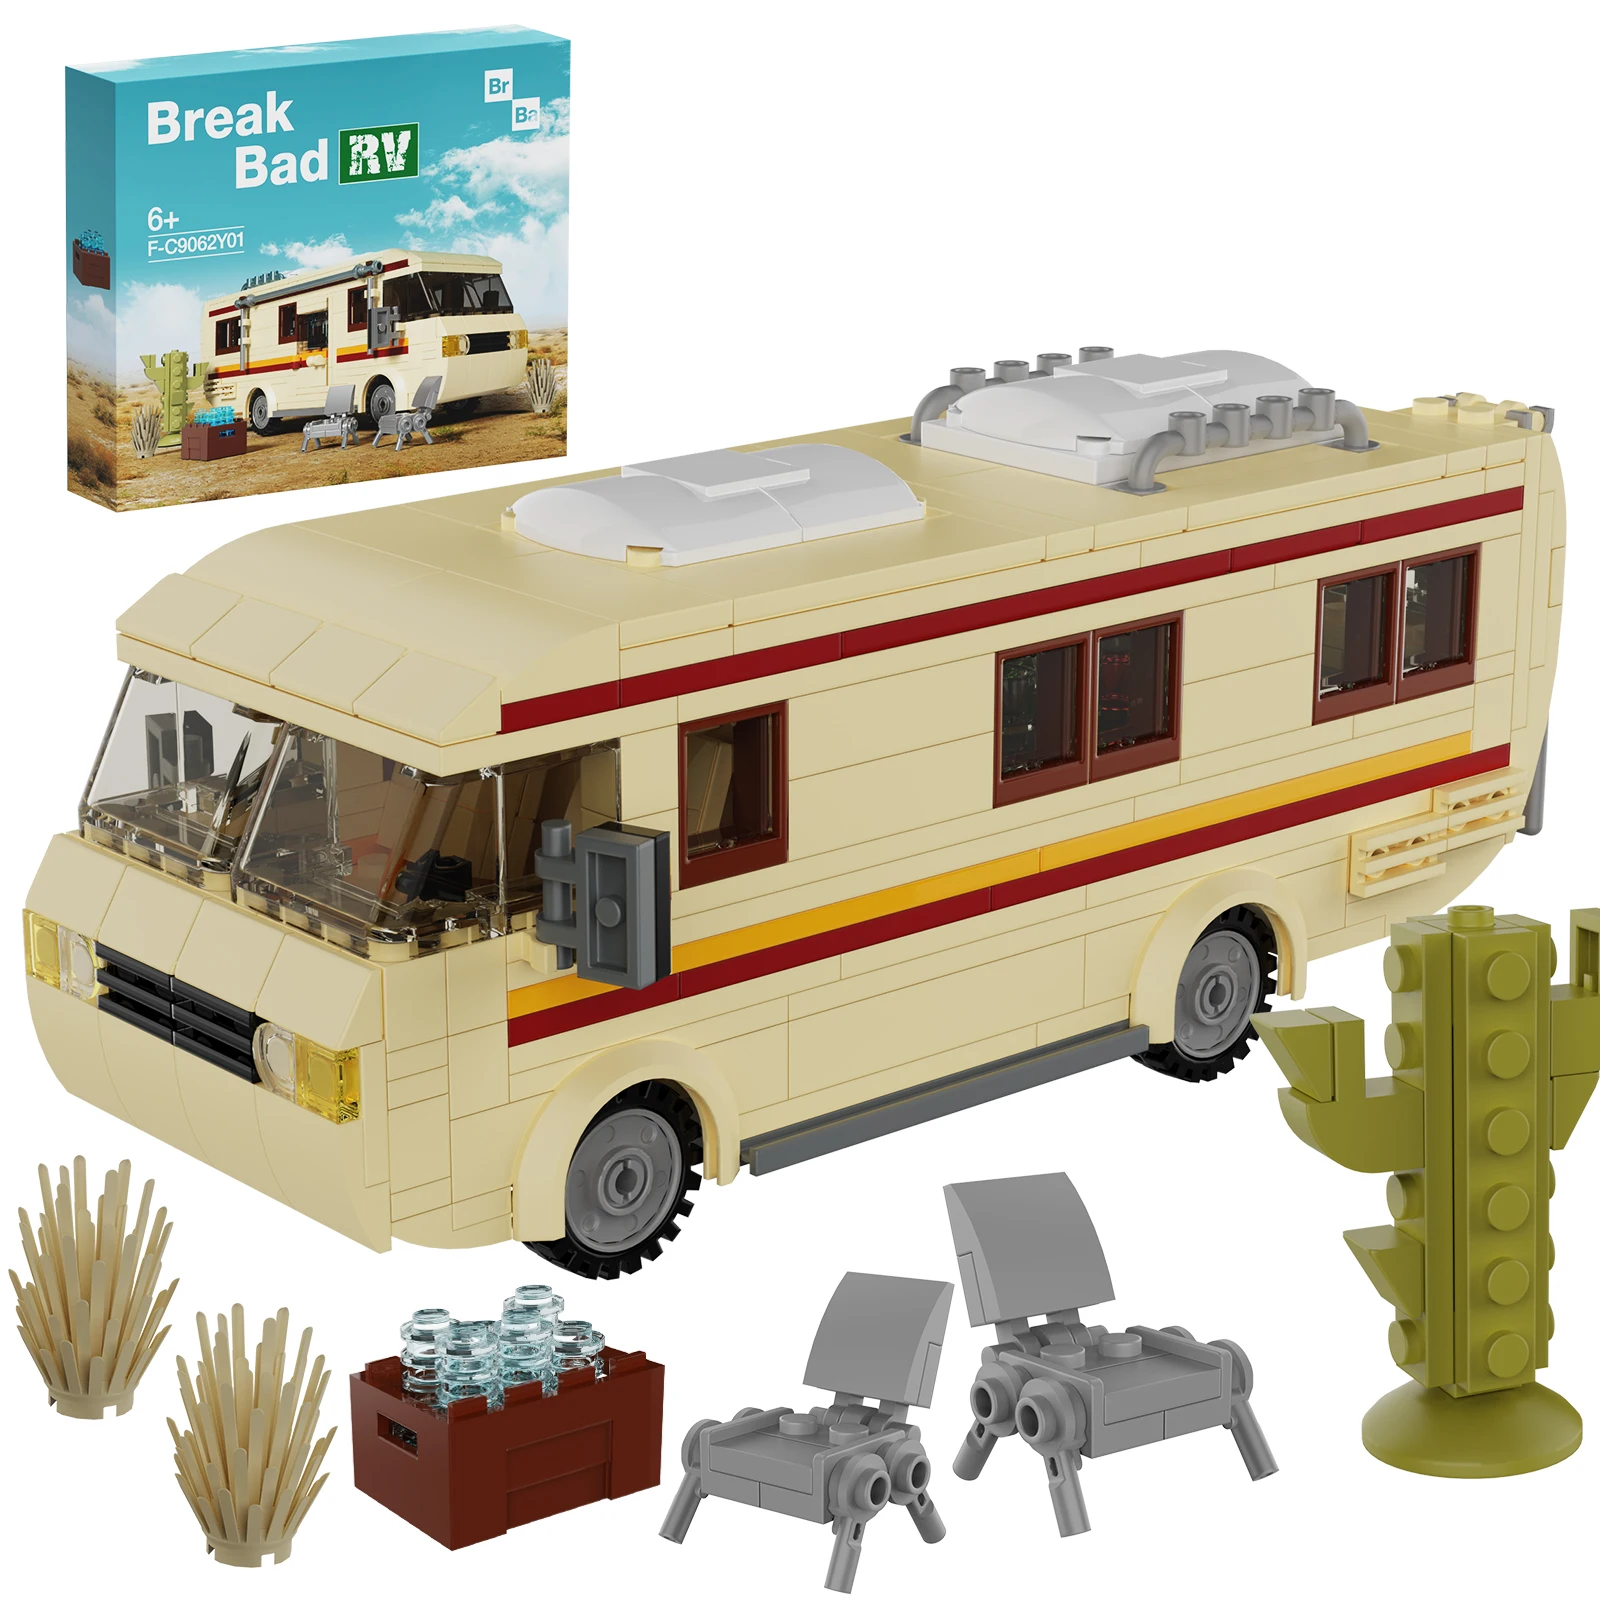 

Набор строительных блоков Drama Breaking Motor Home, 432 шт., модель автомобиля для путешествий, кирпичные игрушки для взрослых и детей, подарок на день рождения и Рождество